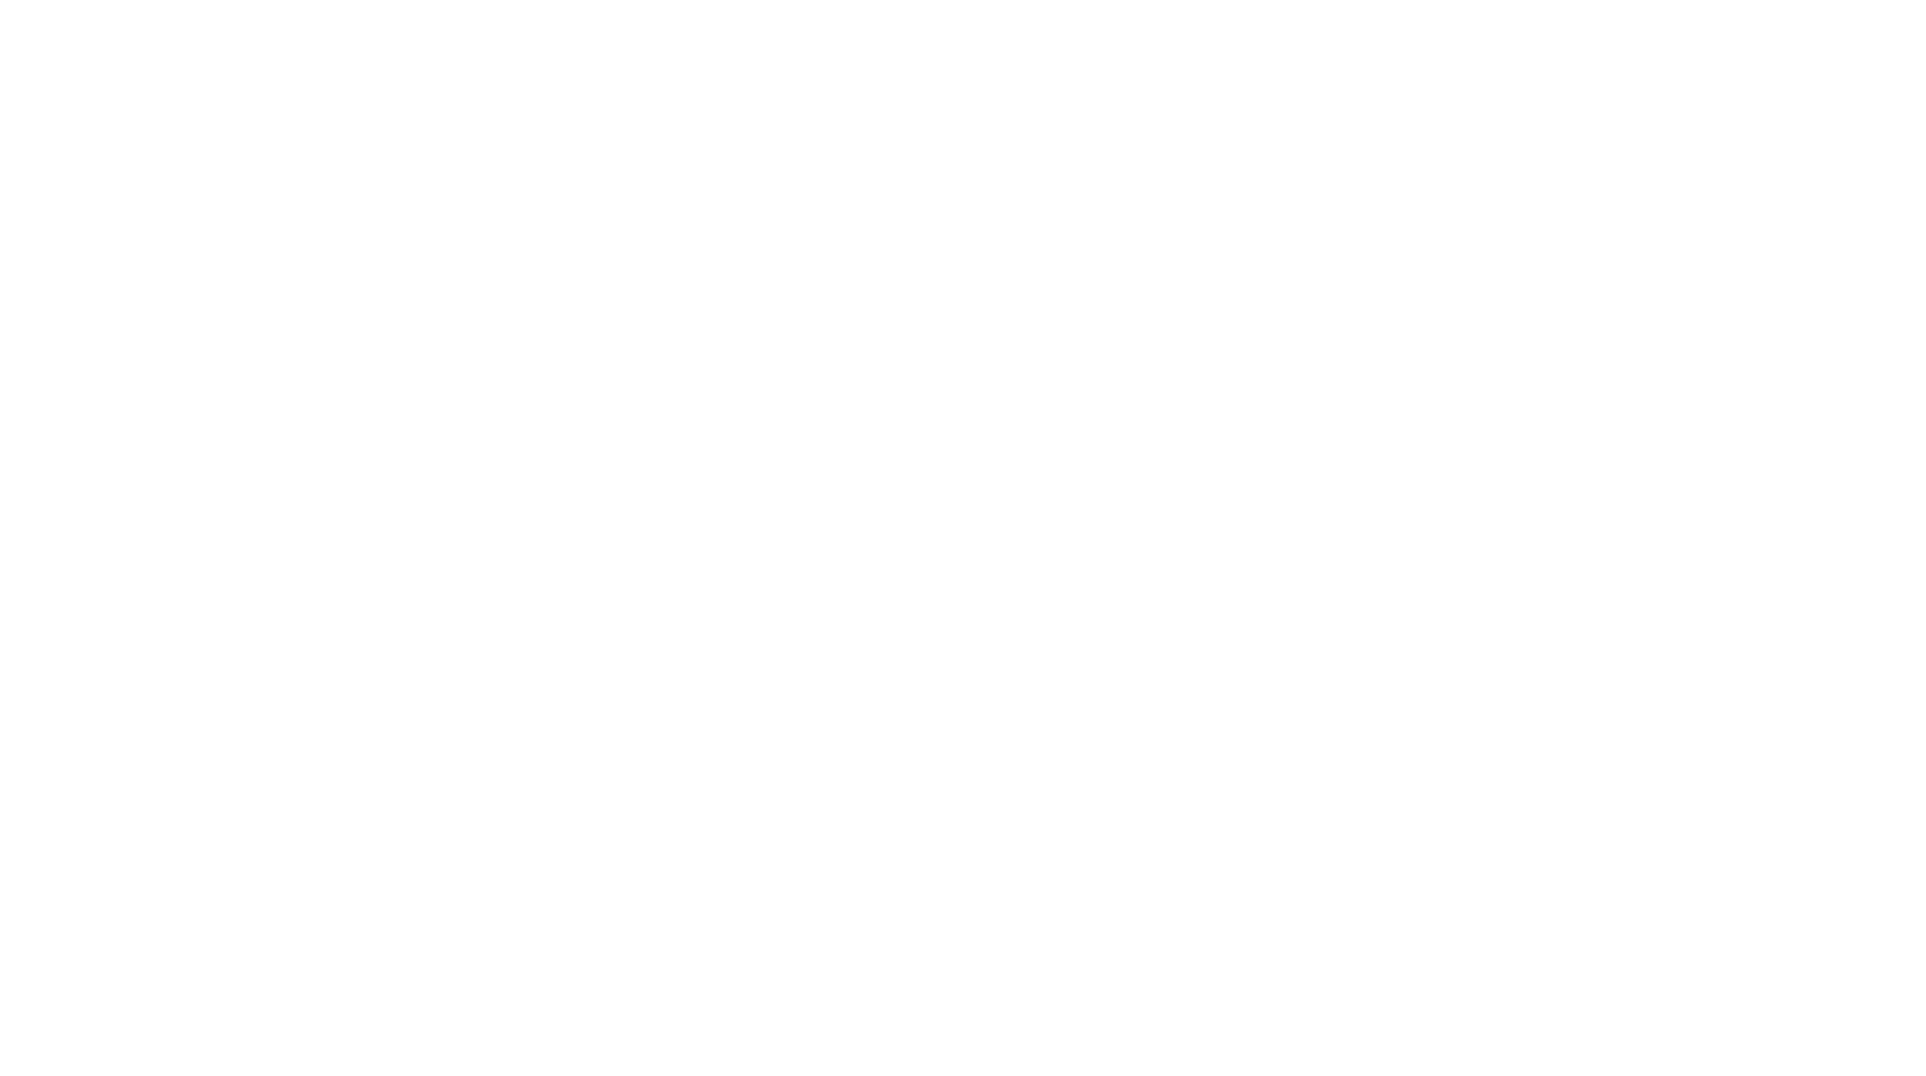 DE05 CGM SE & Co. KGaA logo